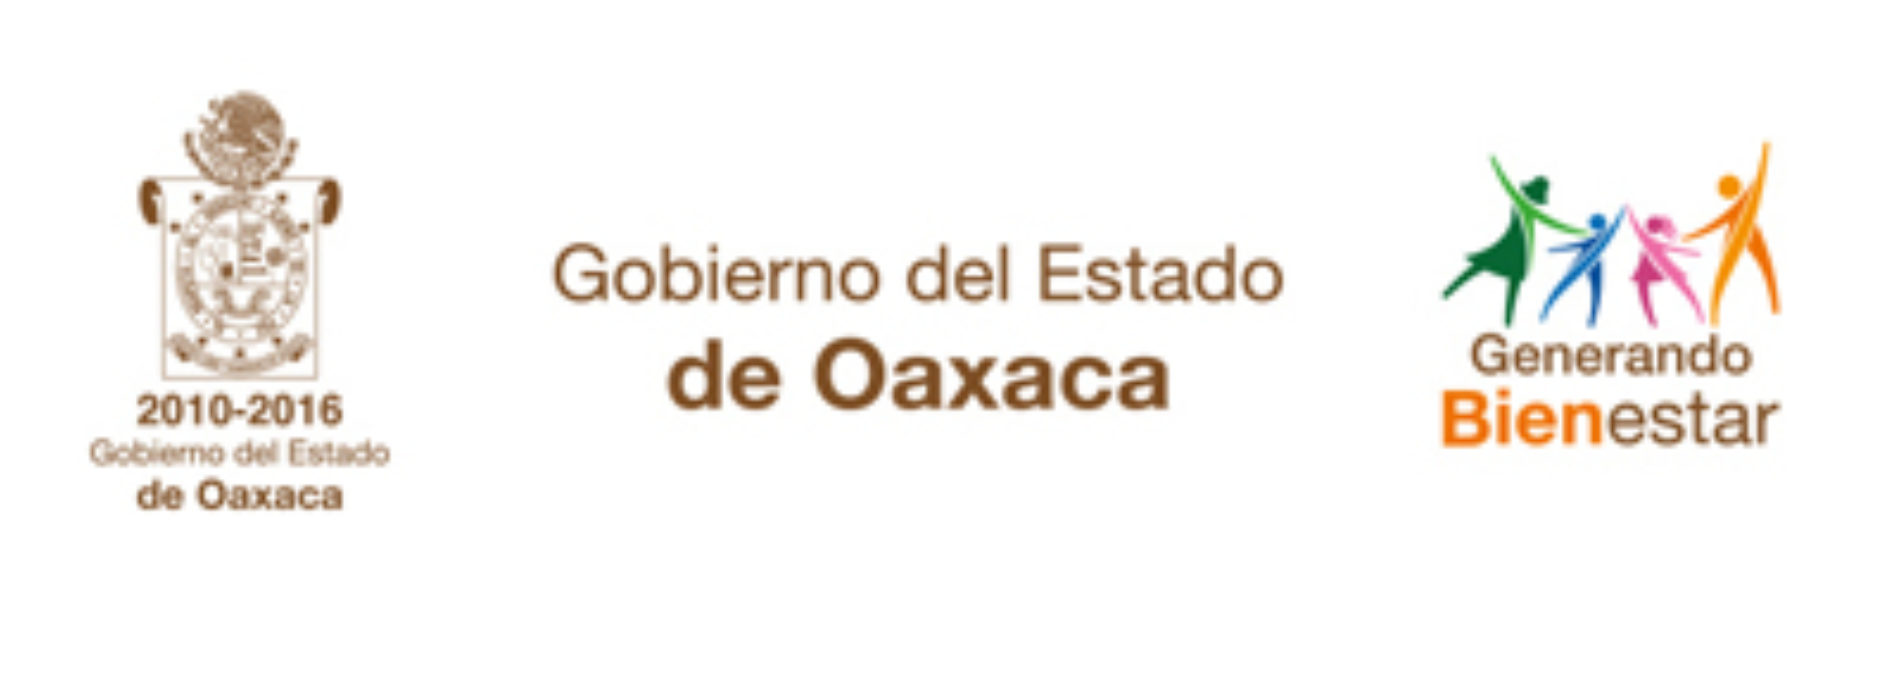 Compromete Gobierno de Oaxaca investigación por hechos violentos ocurridos en la entidad